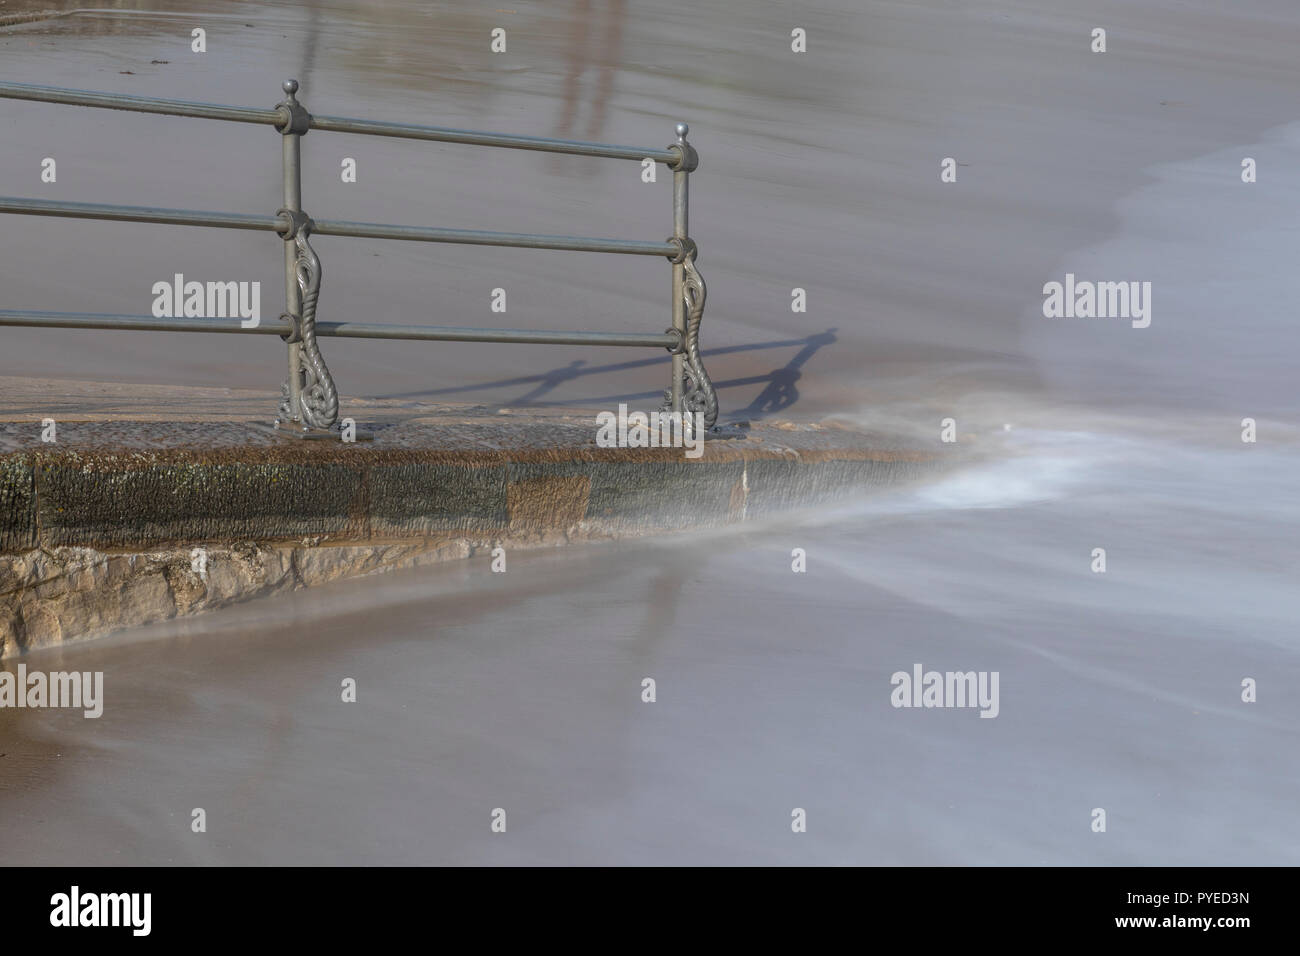 Misty lappatura di acqua in corrispondenza di una rampa di accesso per la sabbiosa spiaggia di Swanage Foto Stock